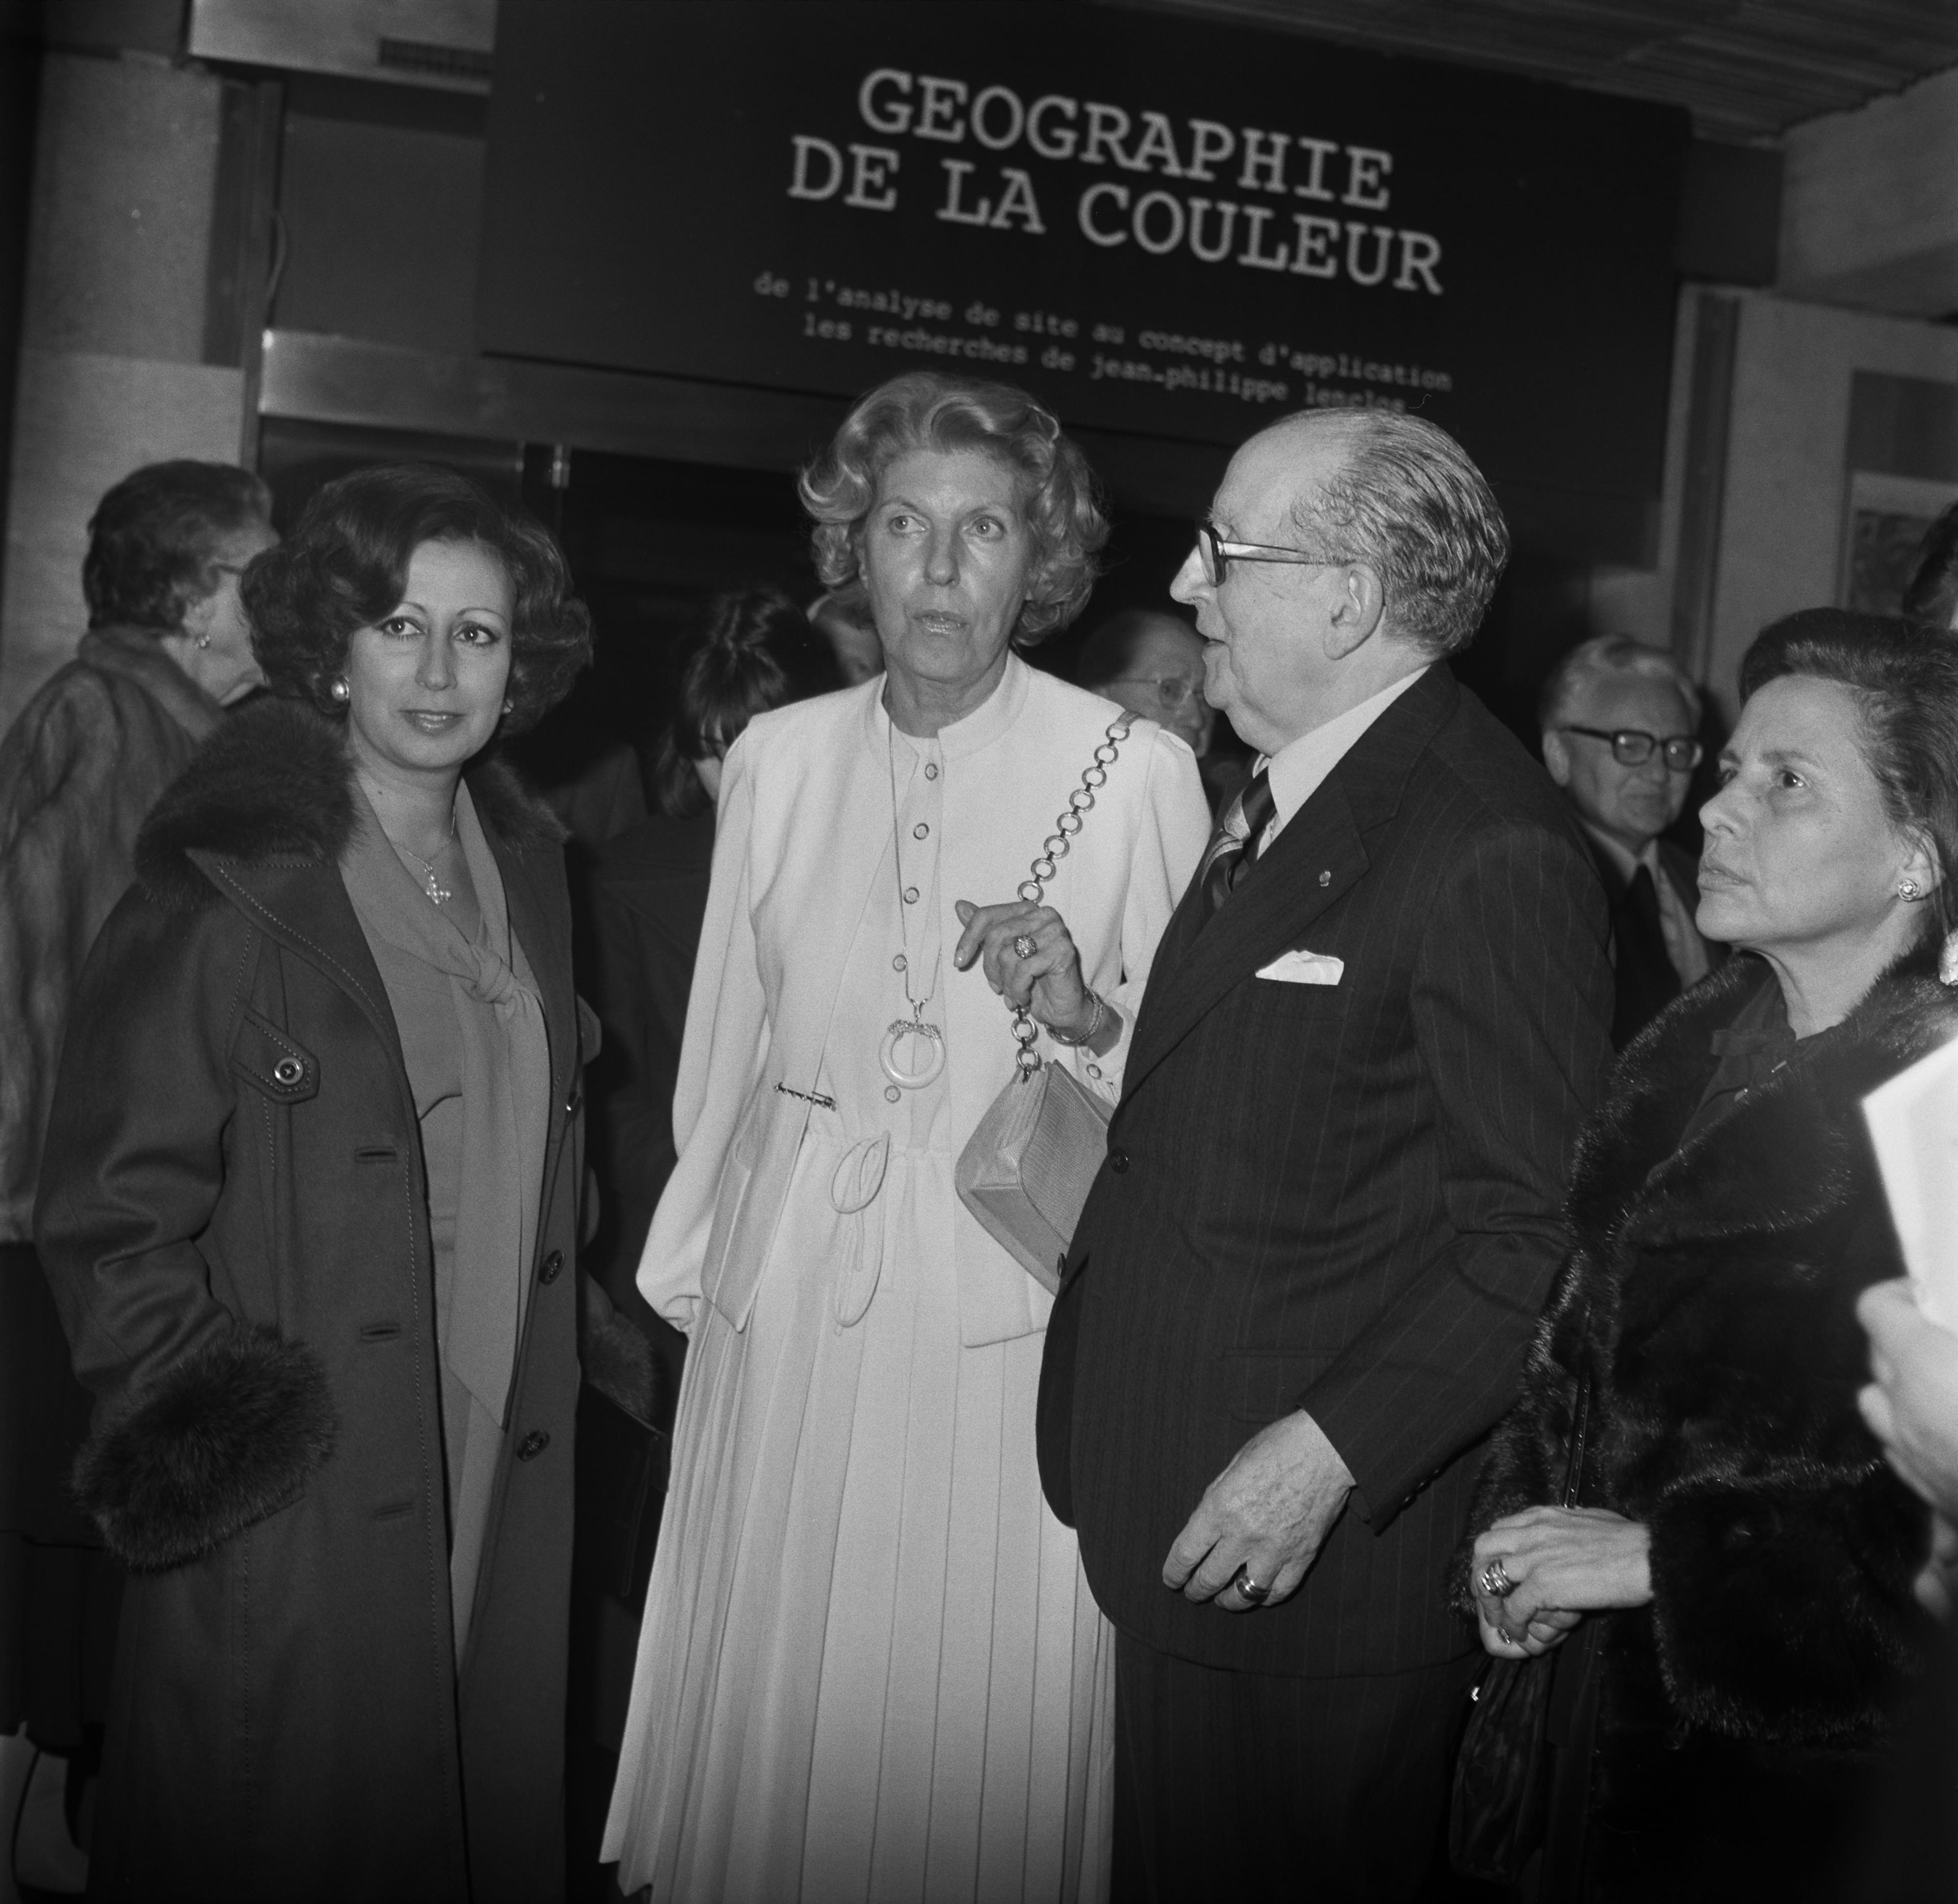 Visita oficial. Manuela Eanes (à esq.), Claude Jacqueline Pompidou e José de Azeredo Perdigão (ao centro) e Maria Barroso (à dir.)